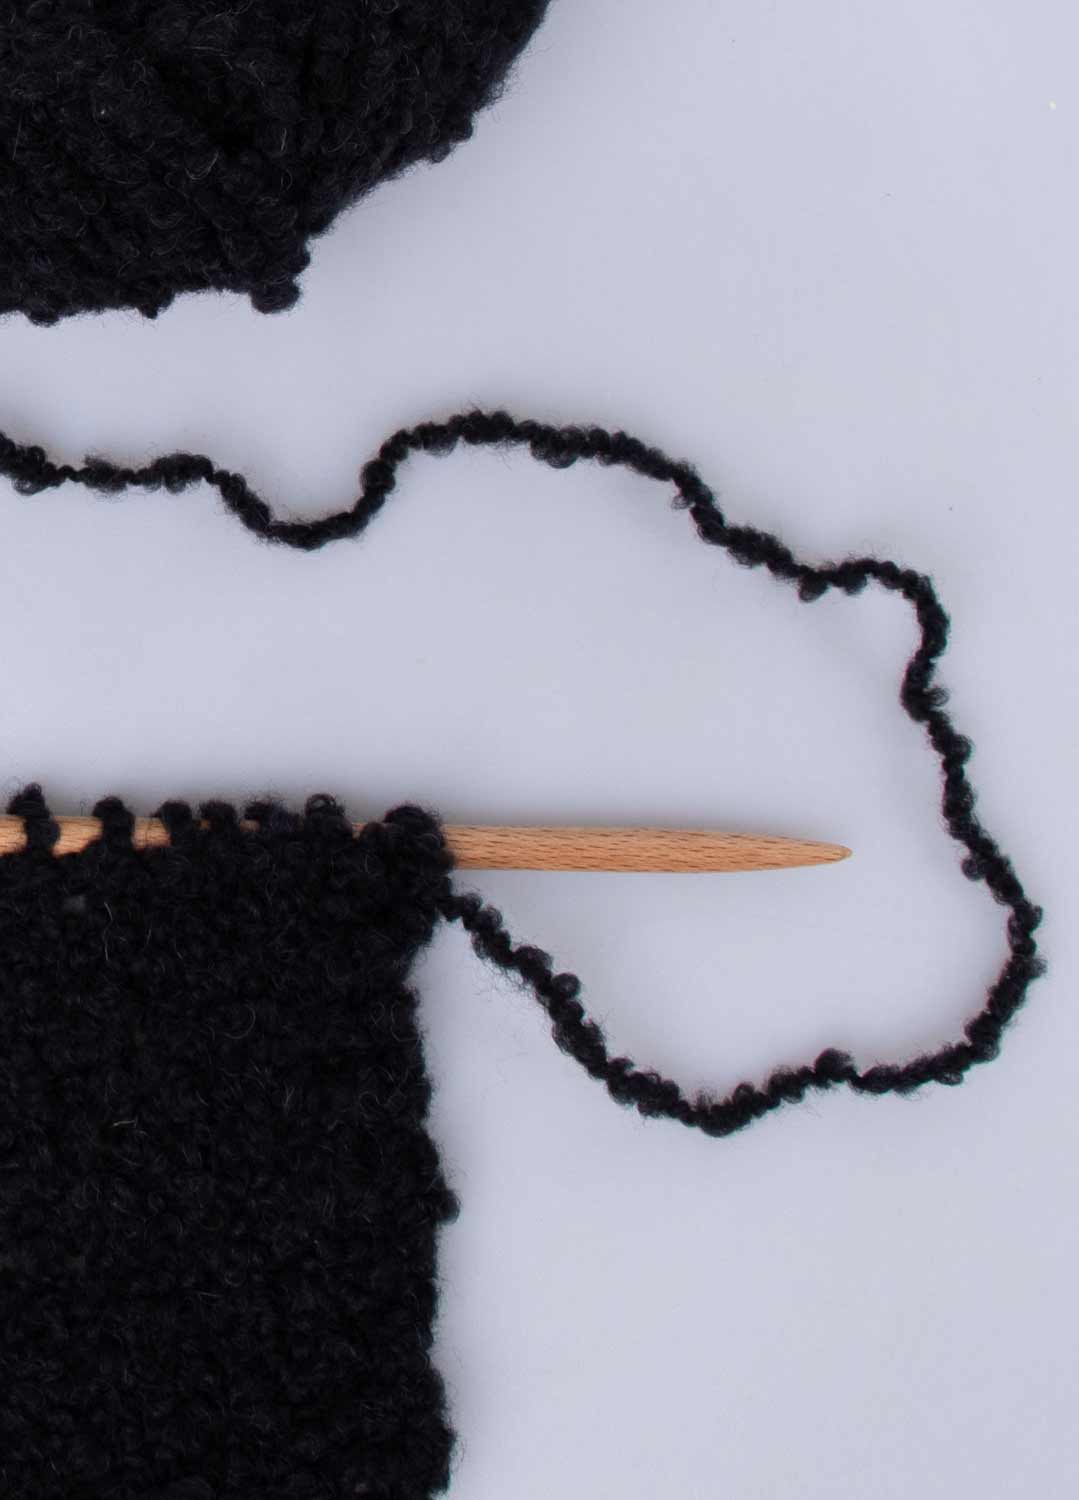 The Boucle Cloud Yarn Black – weareknitters